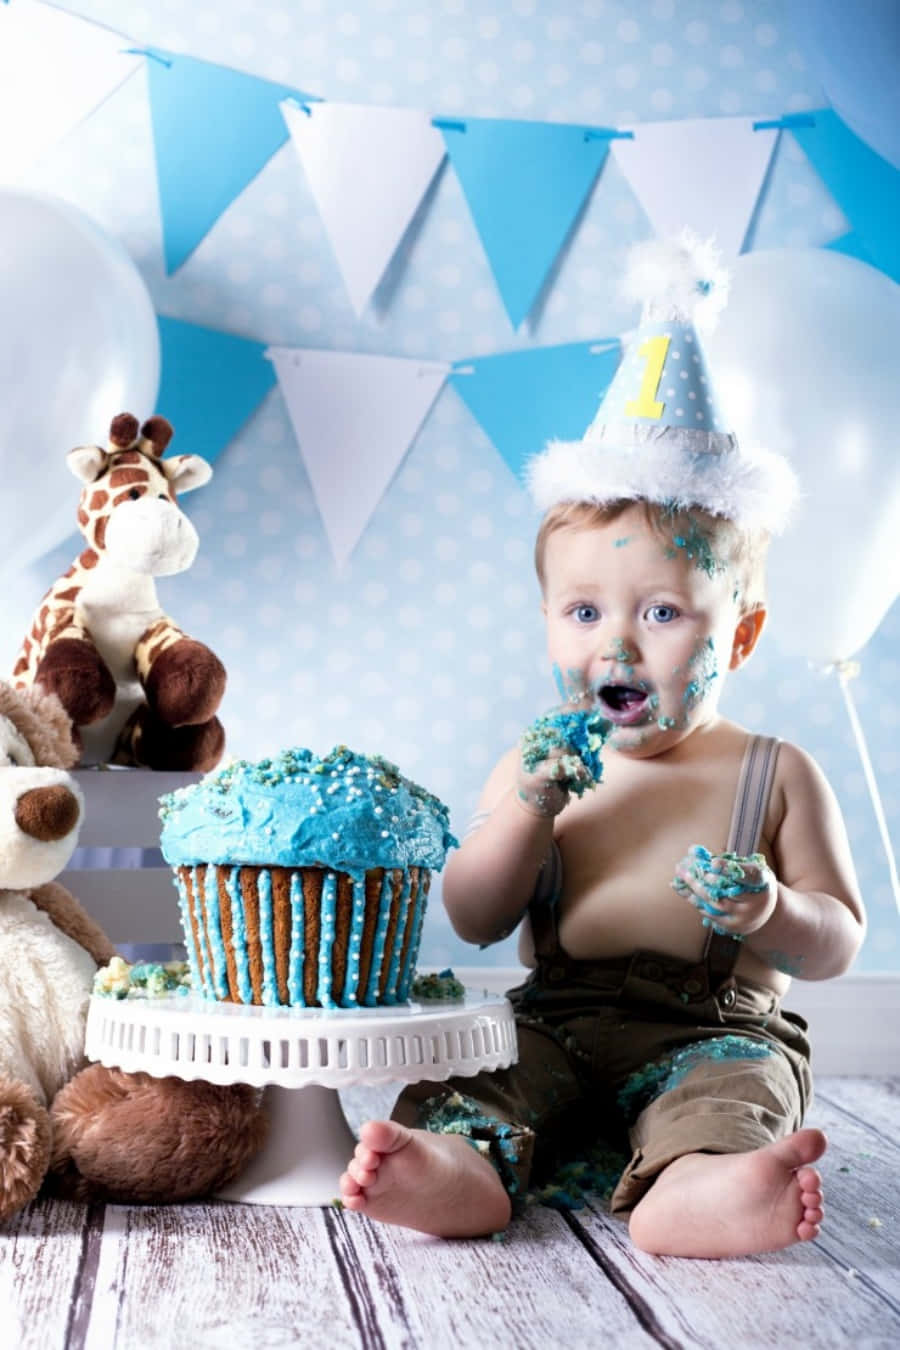 Enliten Pojke Sitter Framför En Tårta Och En Cupcake.